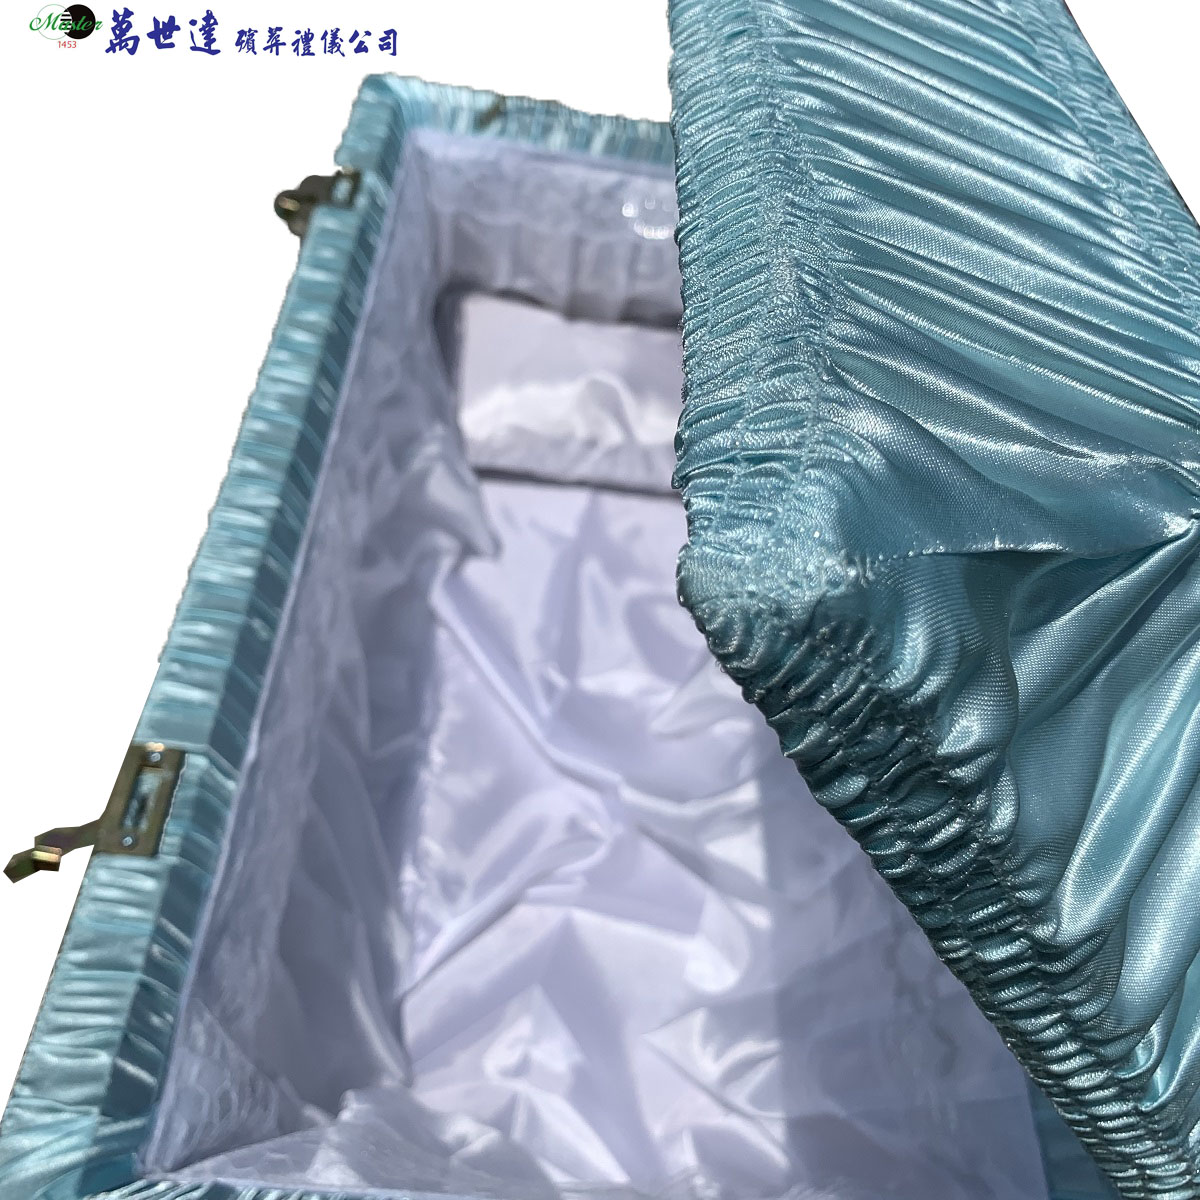 藍色天使棺(90公分)